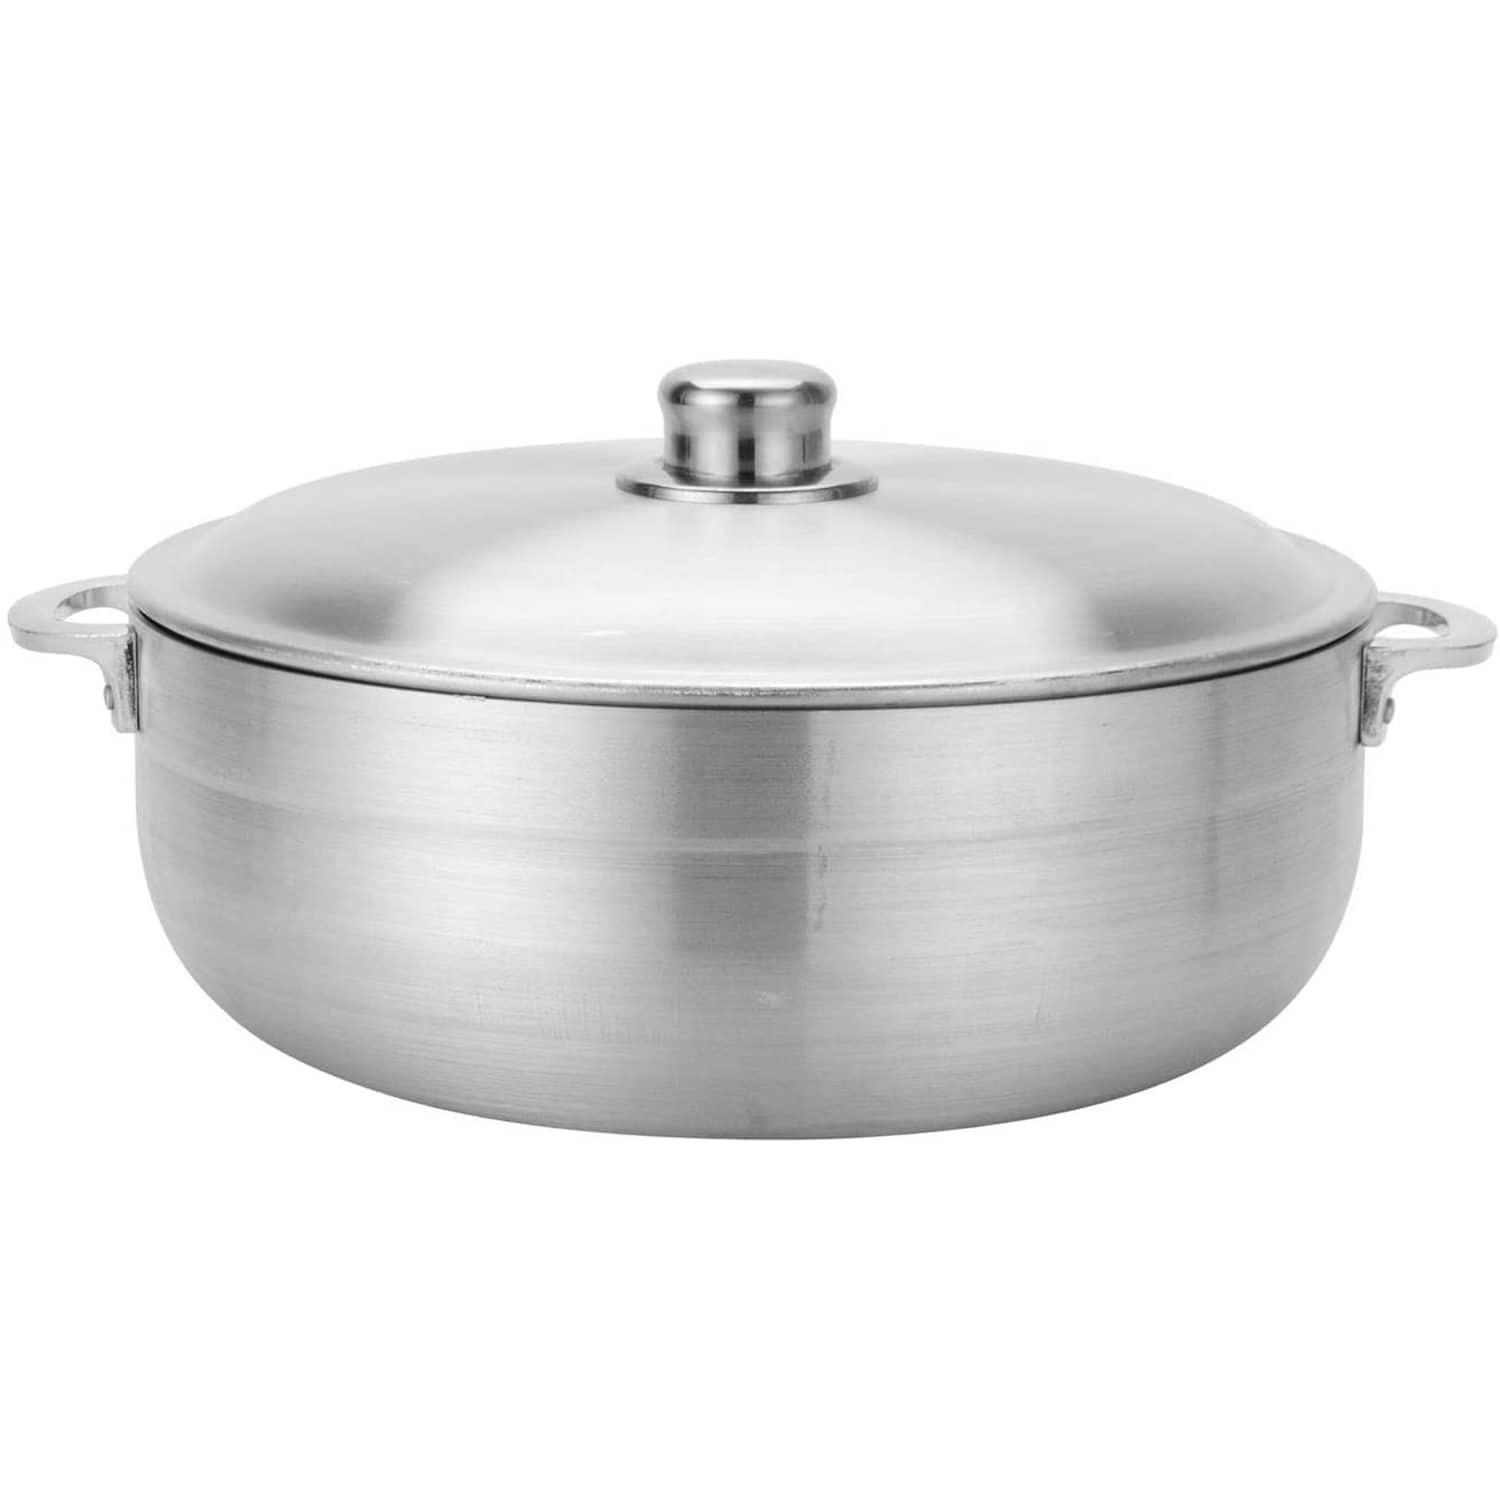 Caldero High Quality Aluminium Cooking Pots Set 5 pcs with Metal Lids